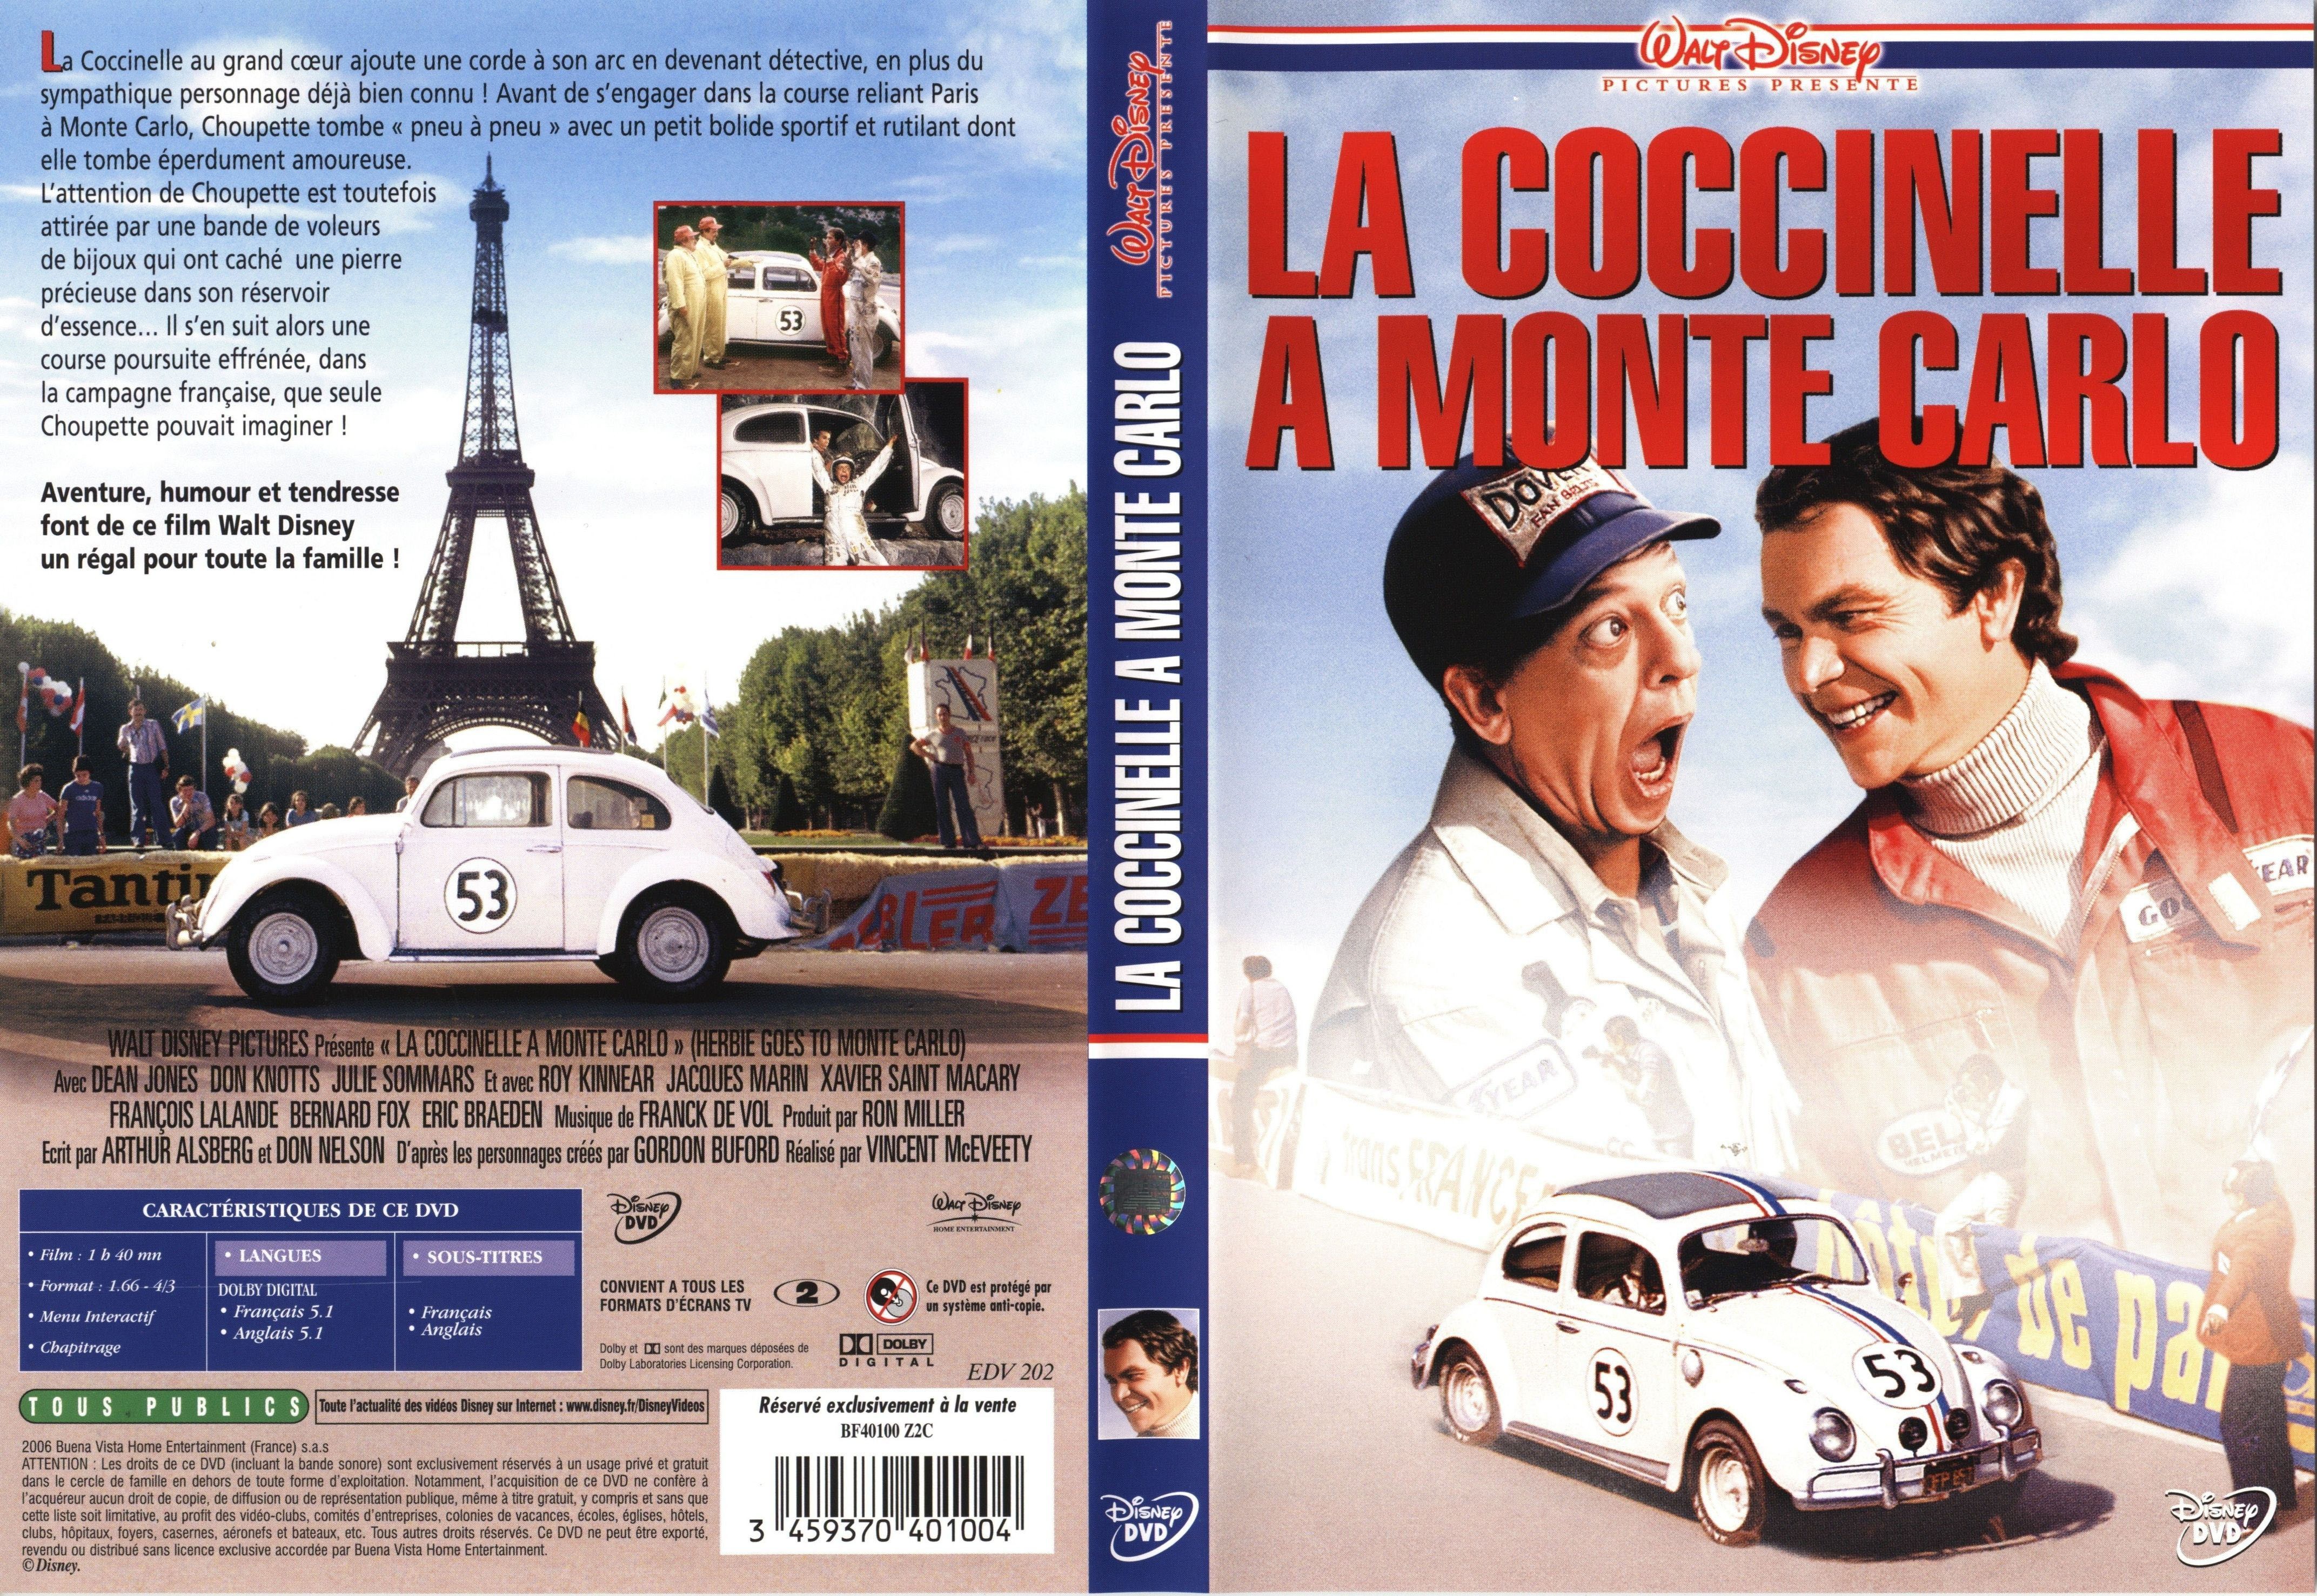 Jaquette DVD La Coccinelle  Monte Carlo v2